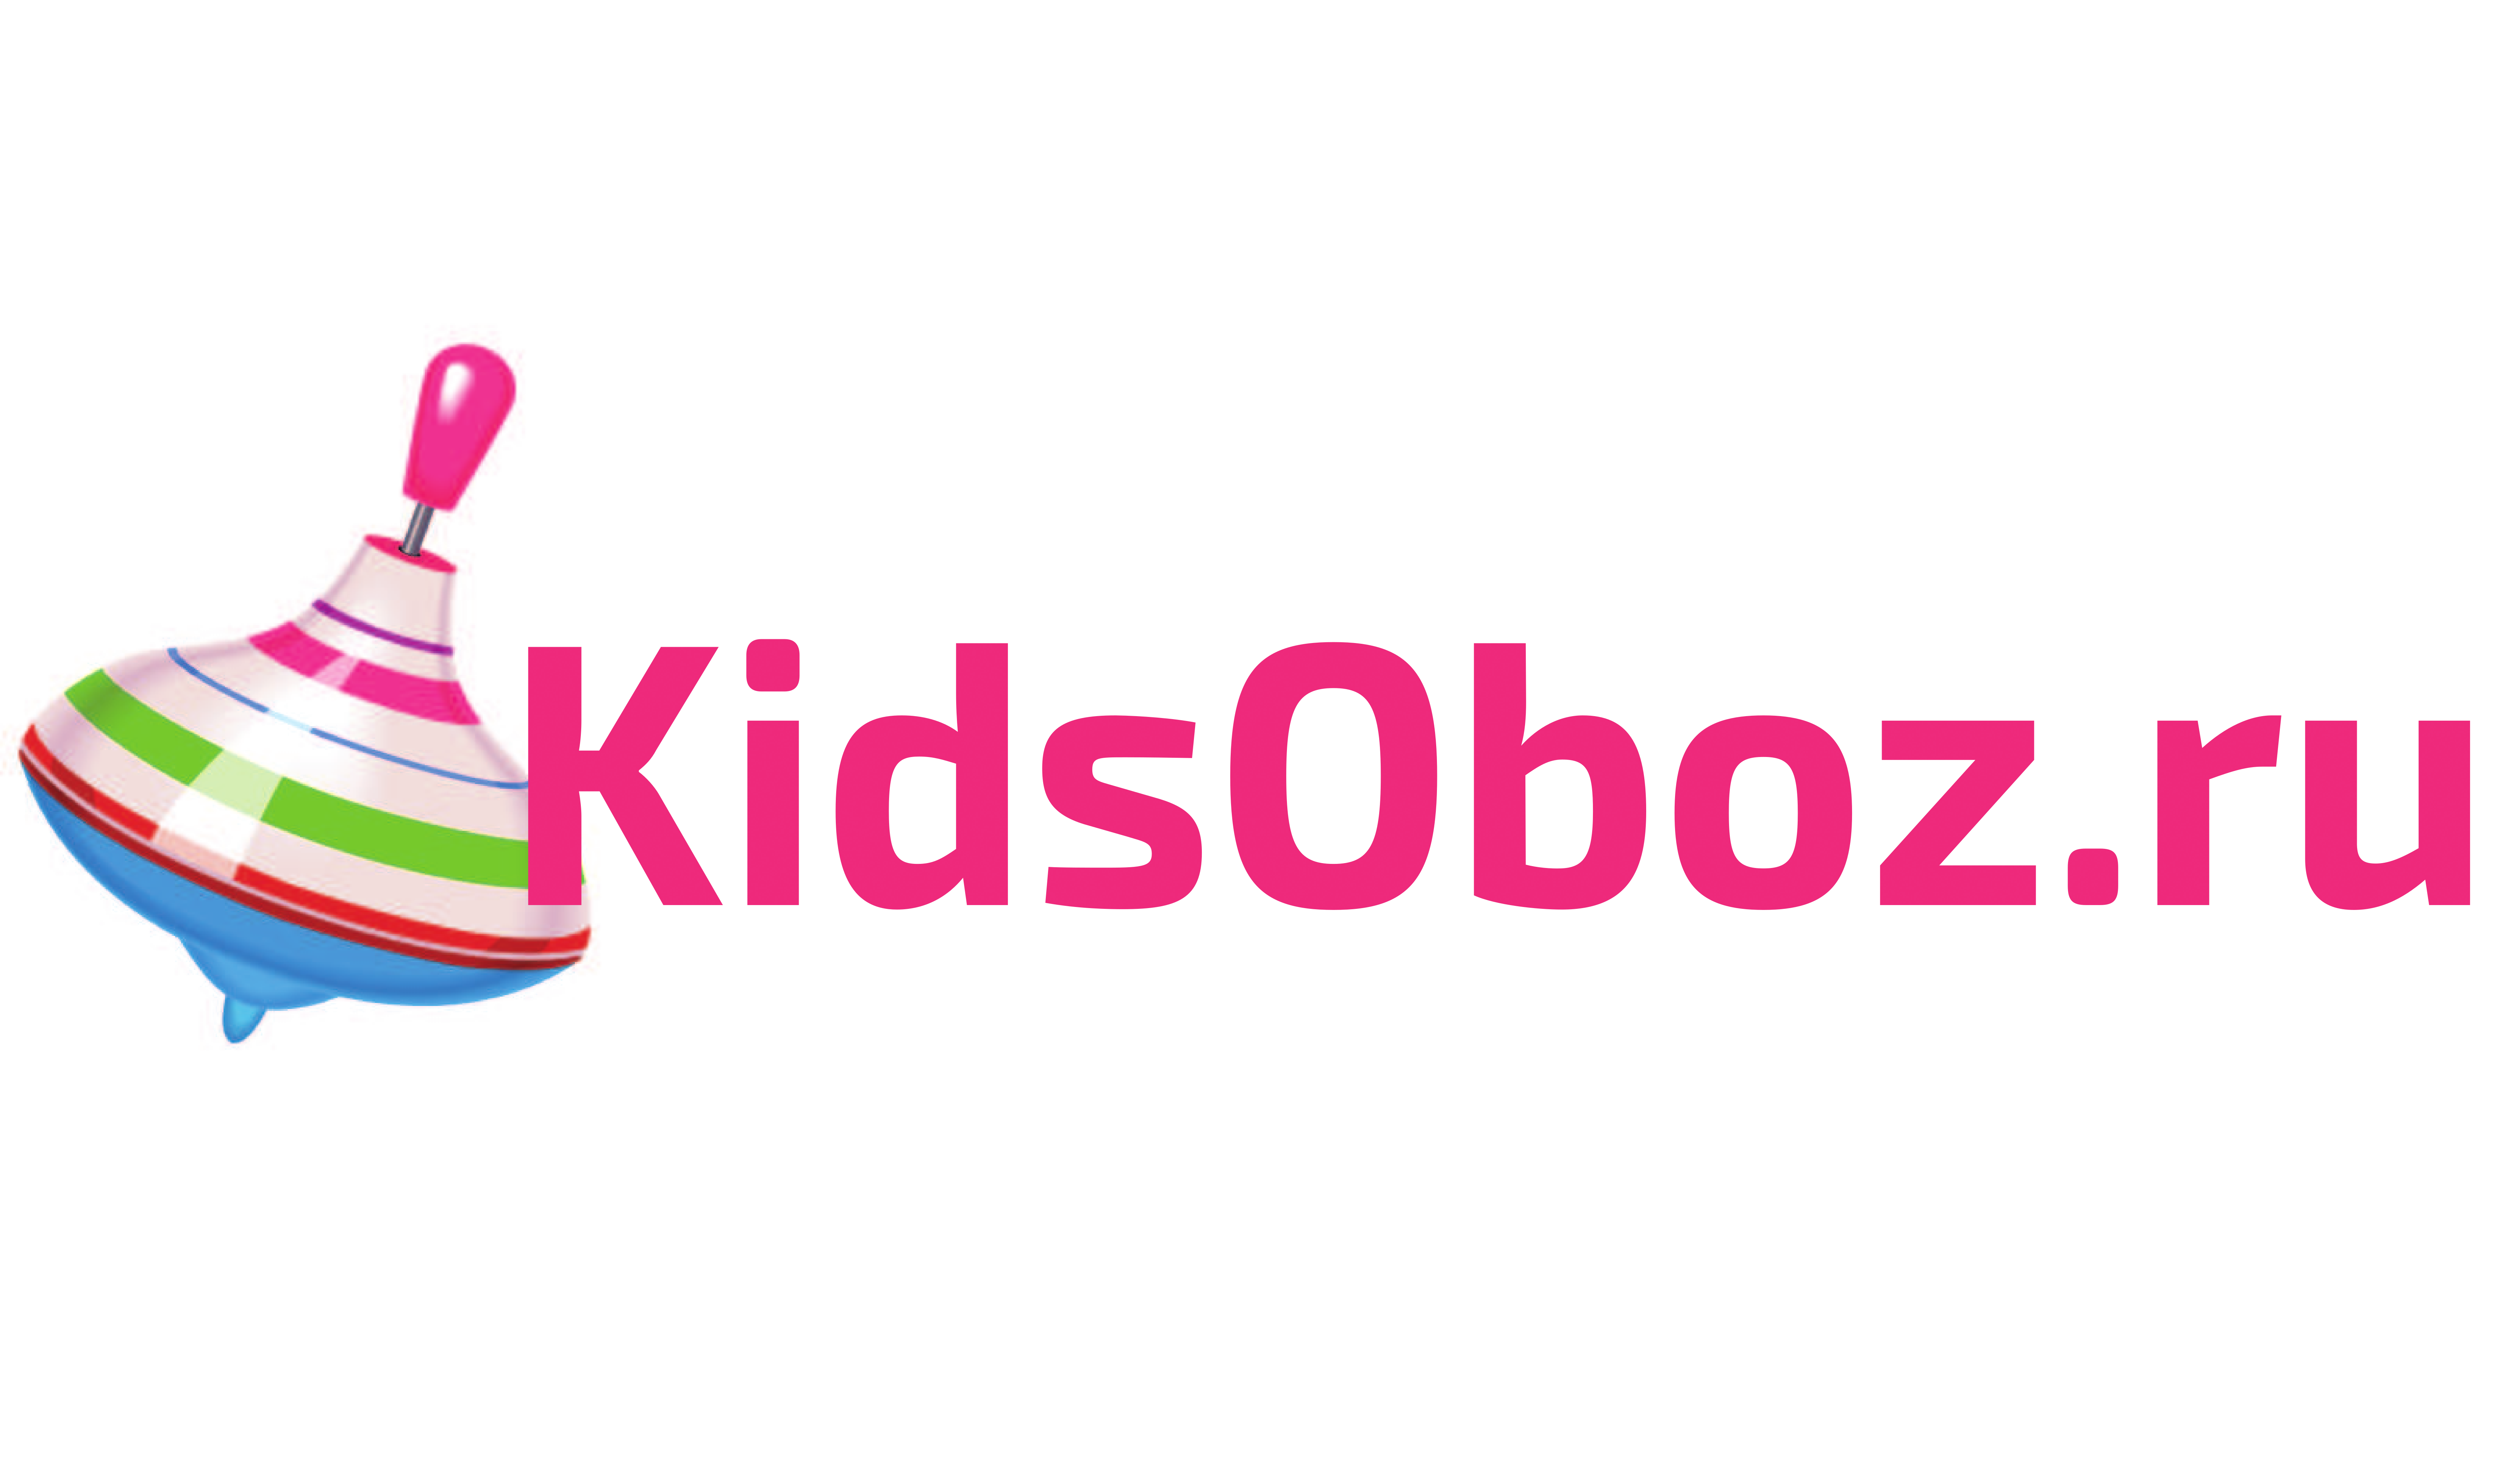 Kids Oboz - всё о детских товарах и игрушках